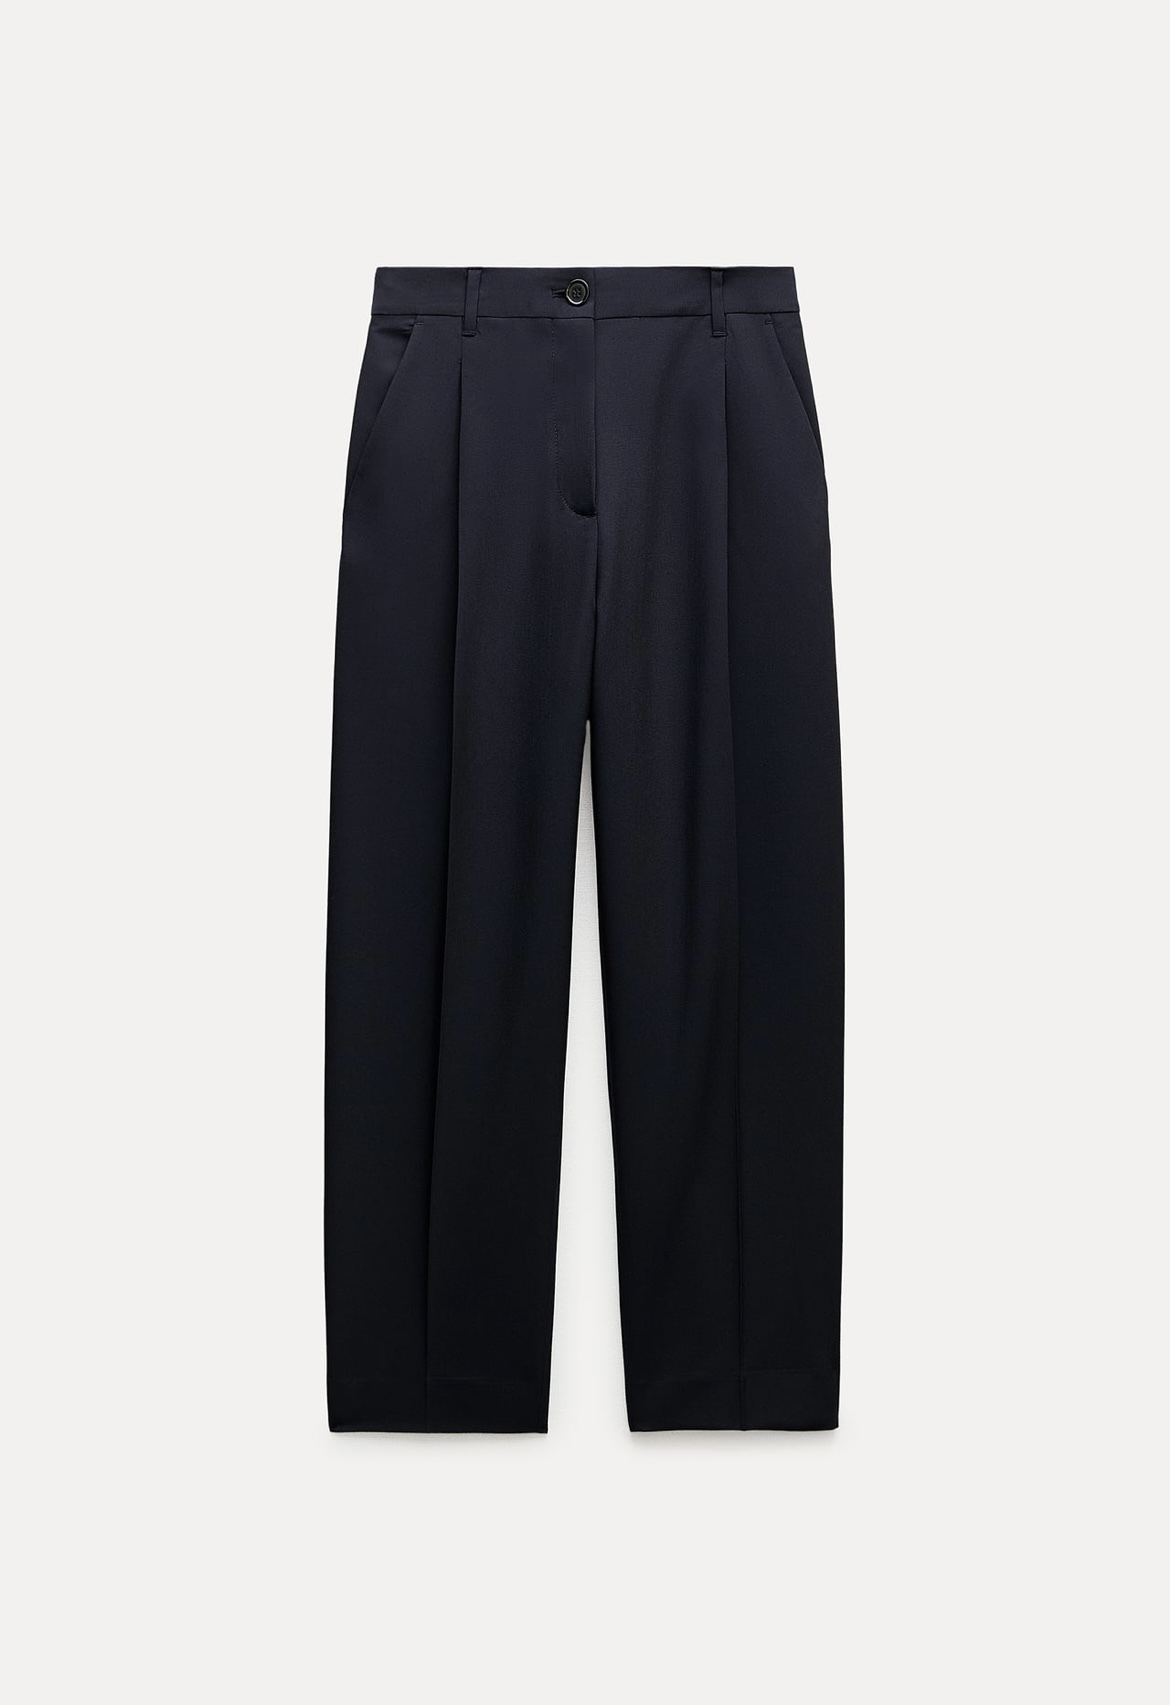 Pantalón con pinzas de Zara (39,95 euros)